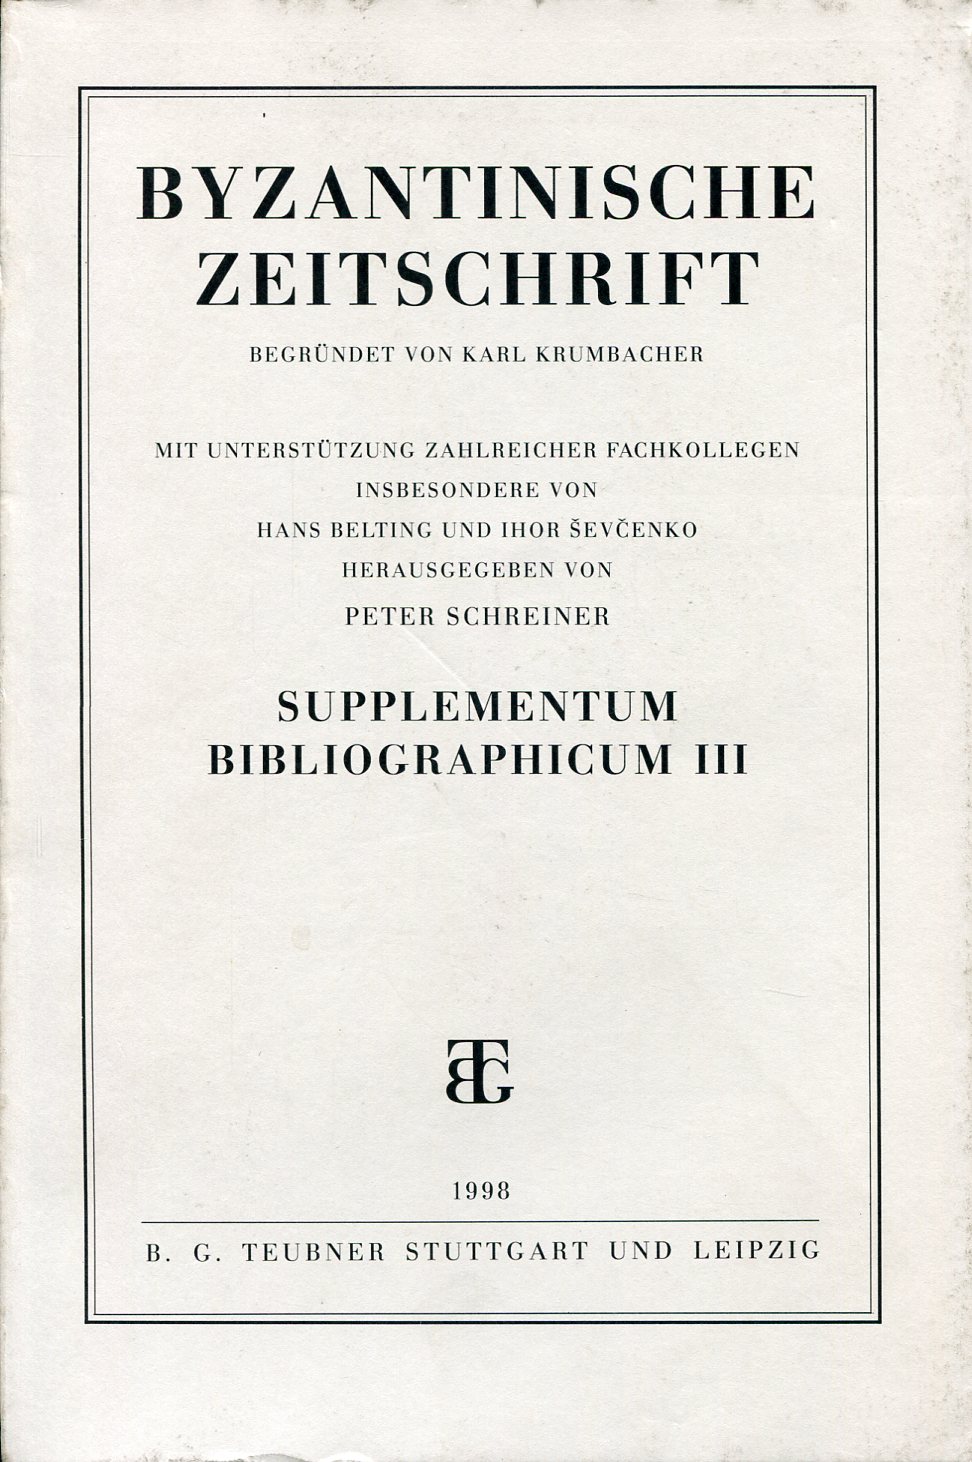 BYZANTINISCHE ZEITSCHRIFT SUPPLEMENTUM BIBLIOGRAPHICUM III